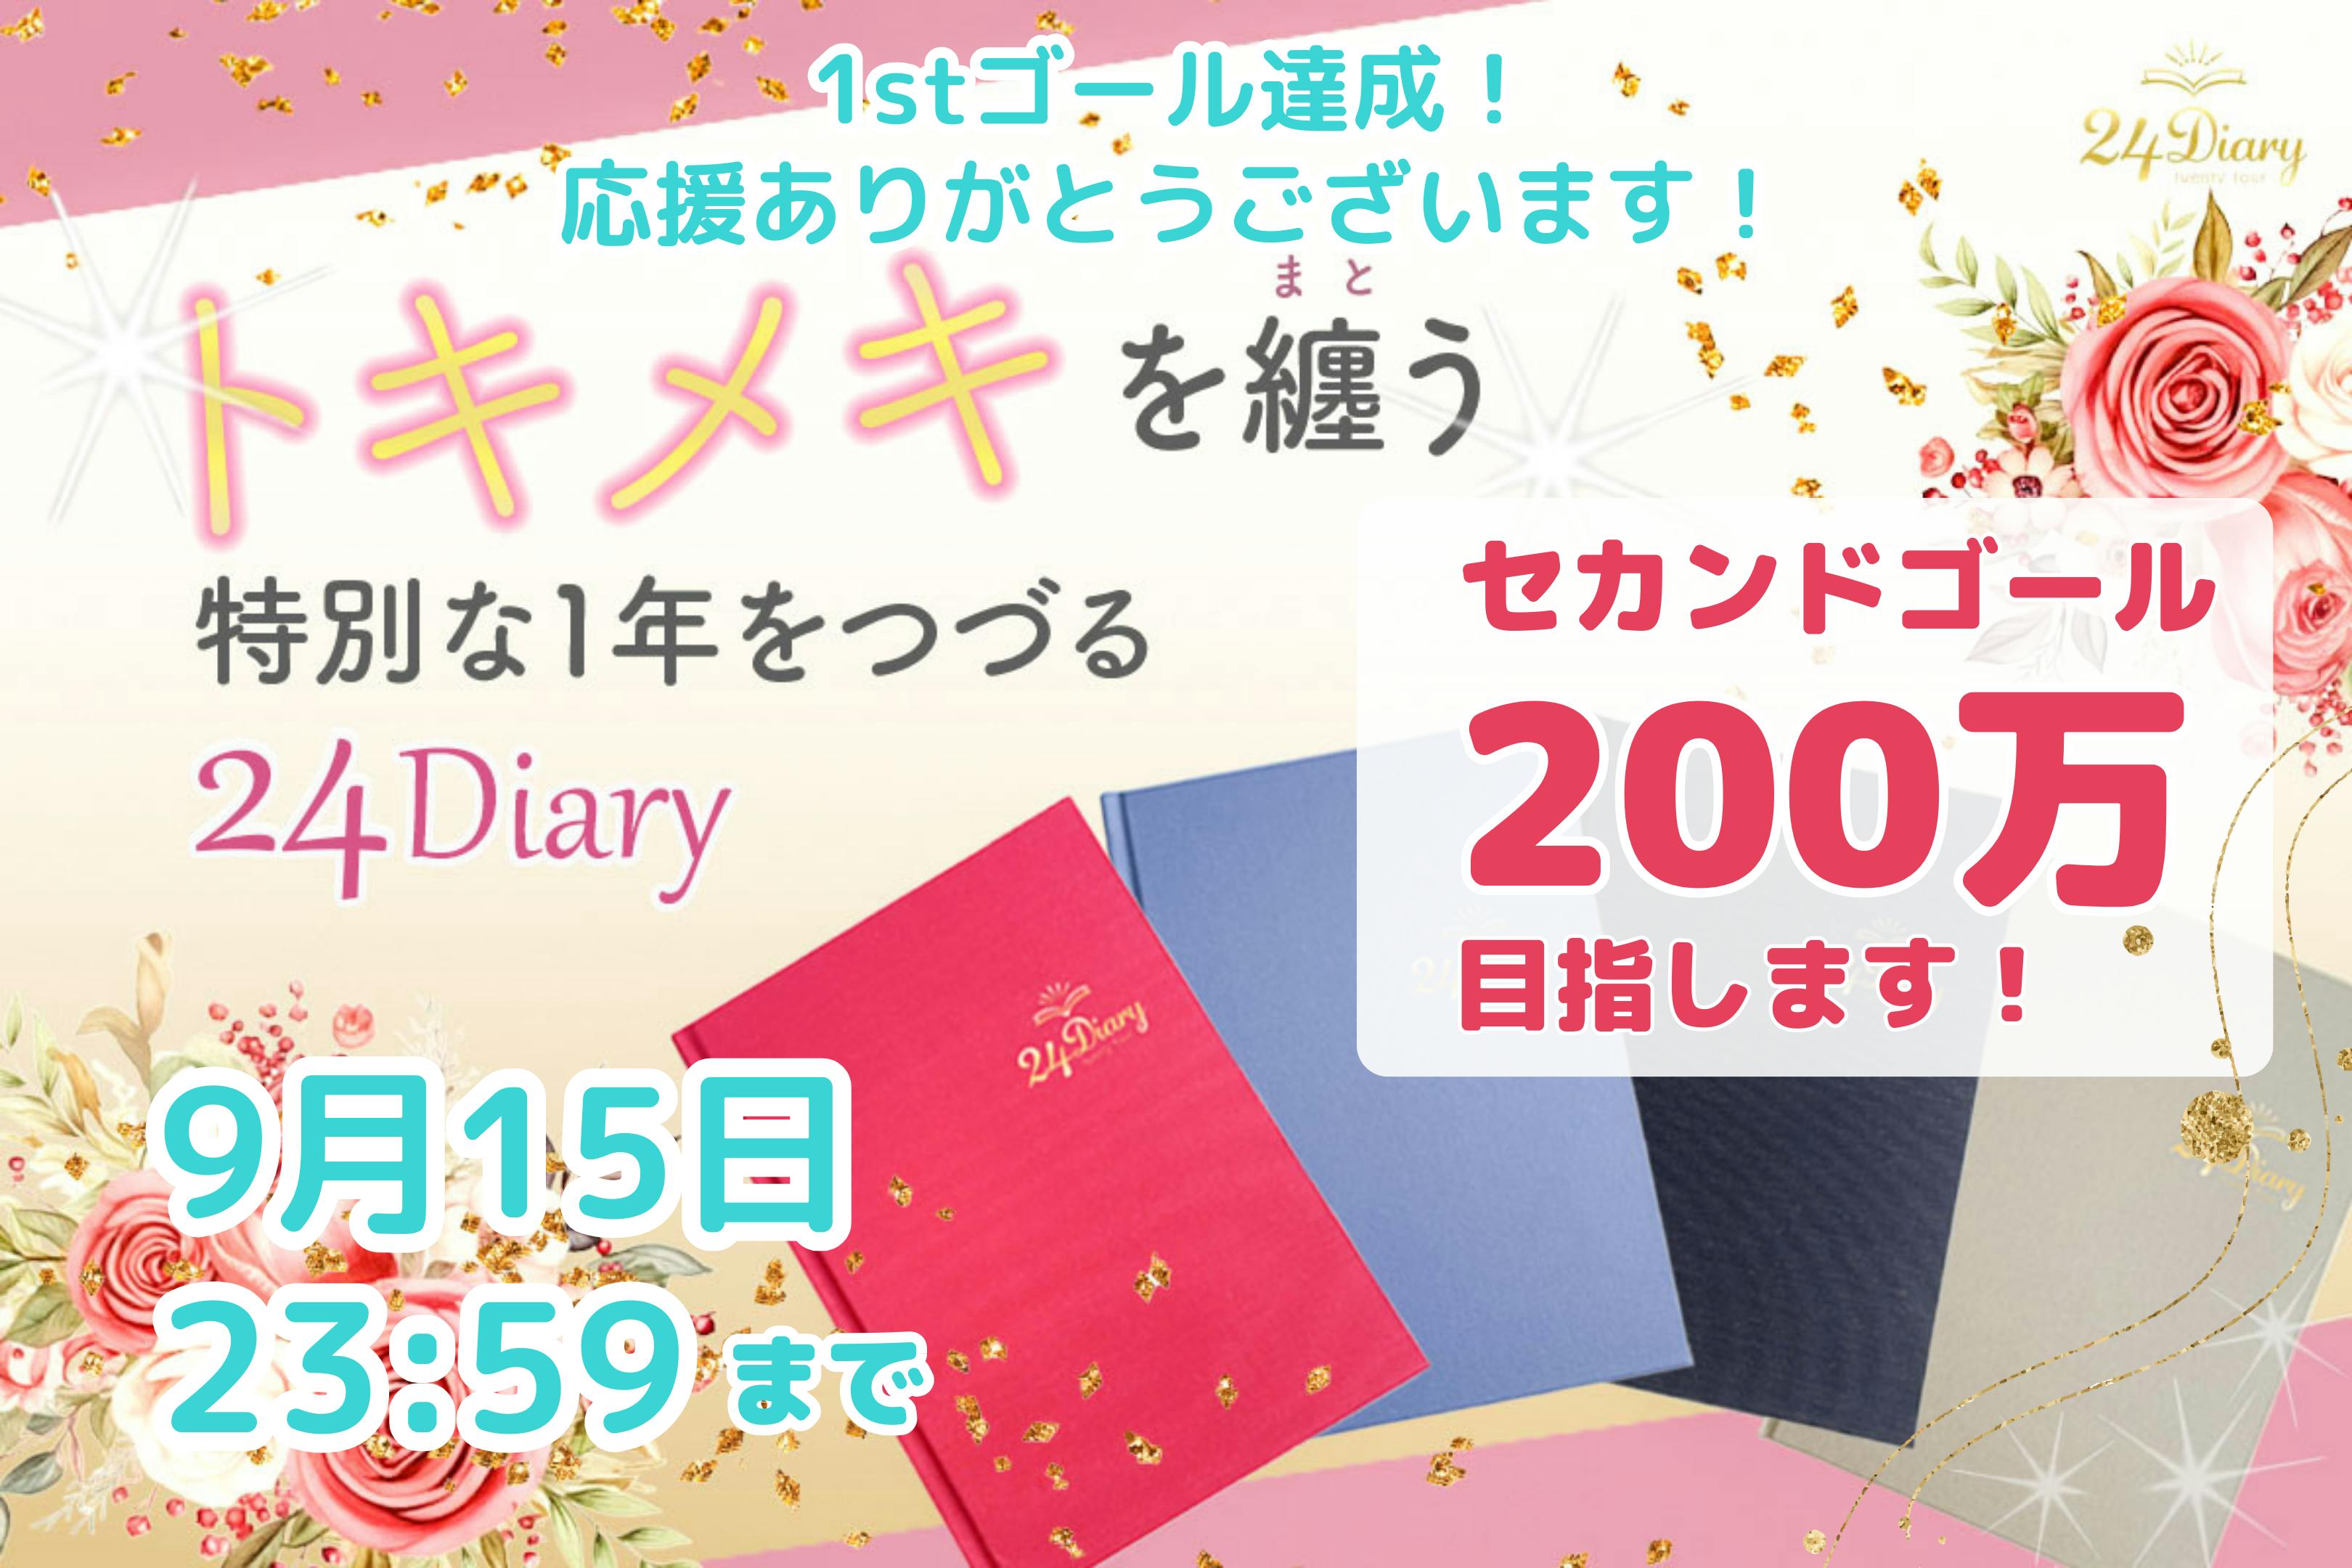 トキメキを纏う 特別な1年を綴る 24Diary Premium を届けたい！ CAMPFIRE (キャンプファイヤー)